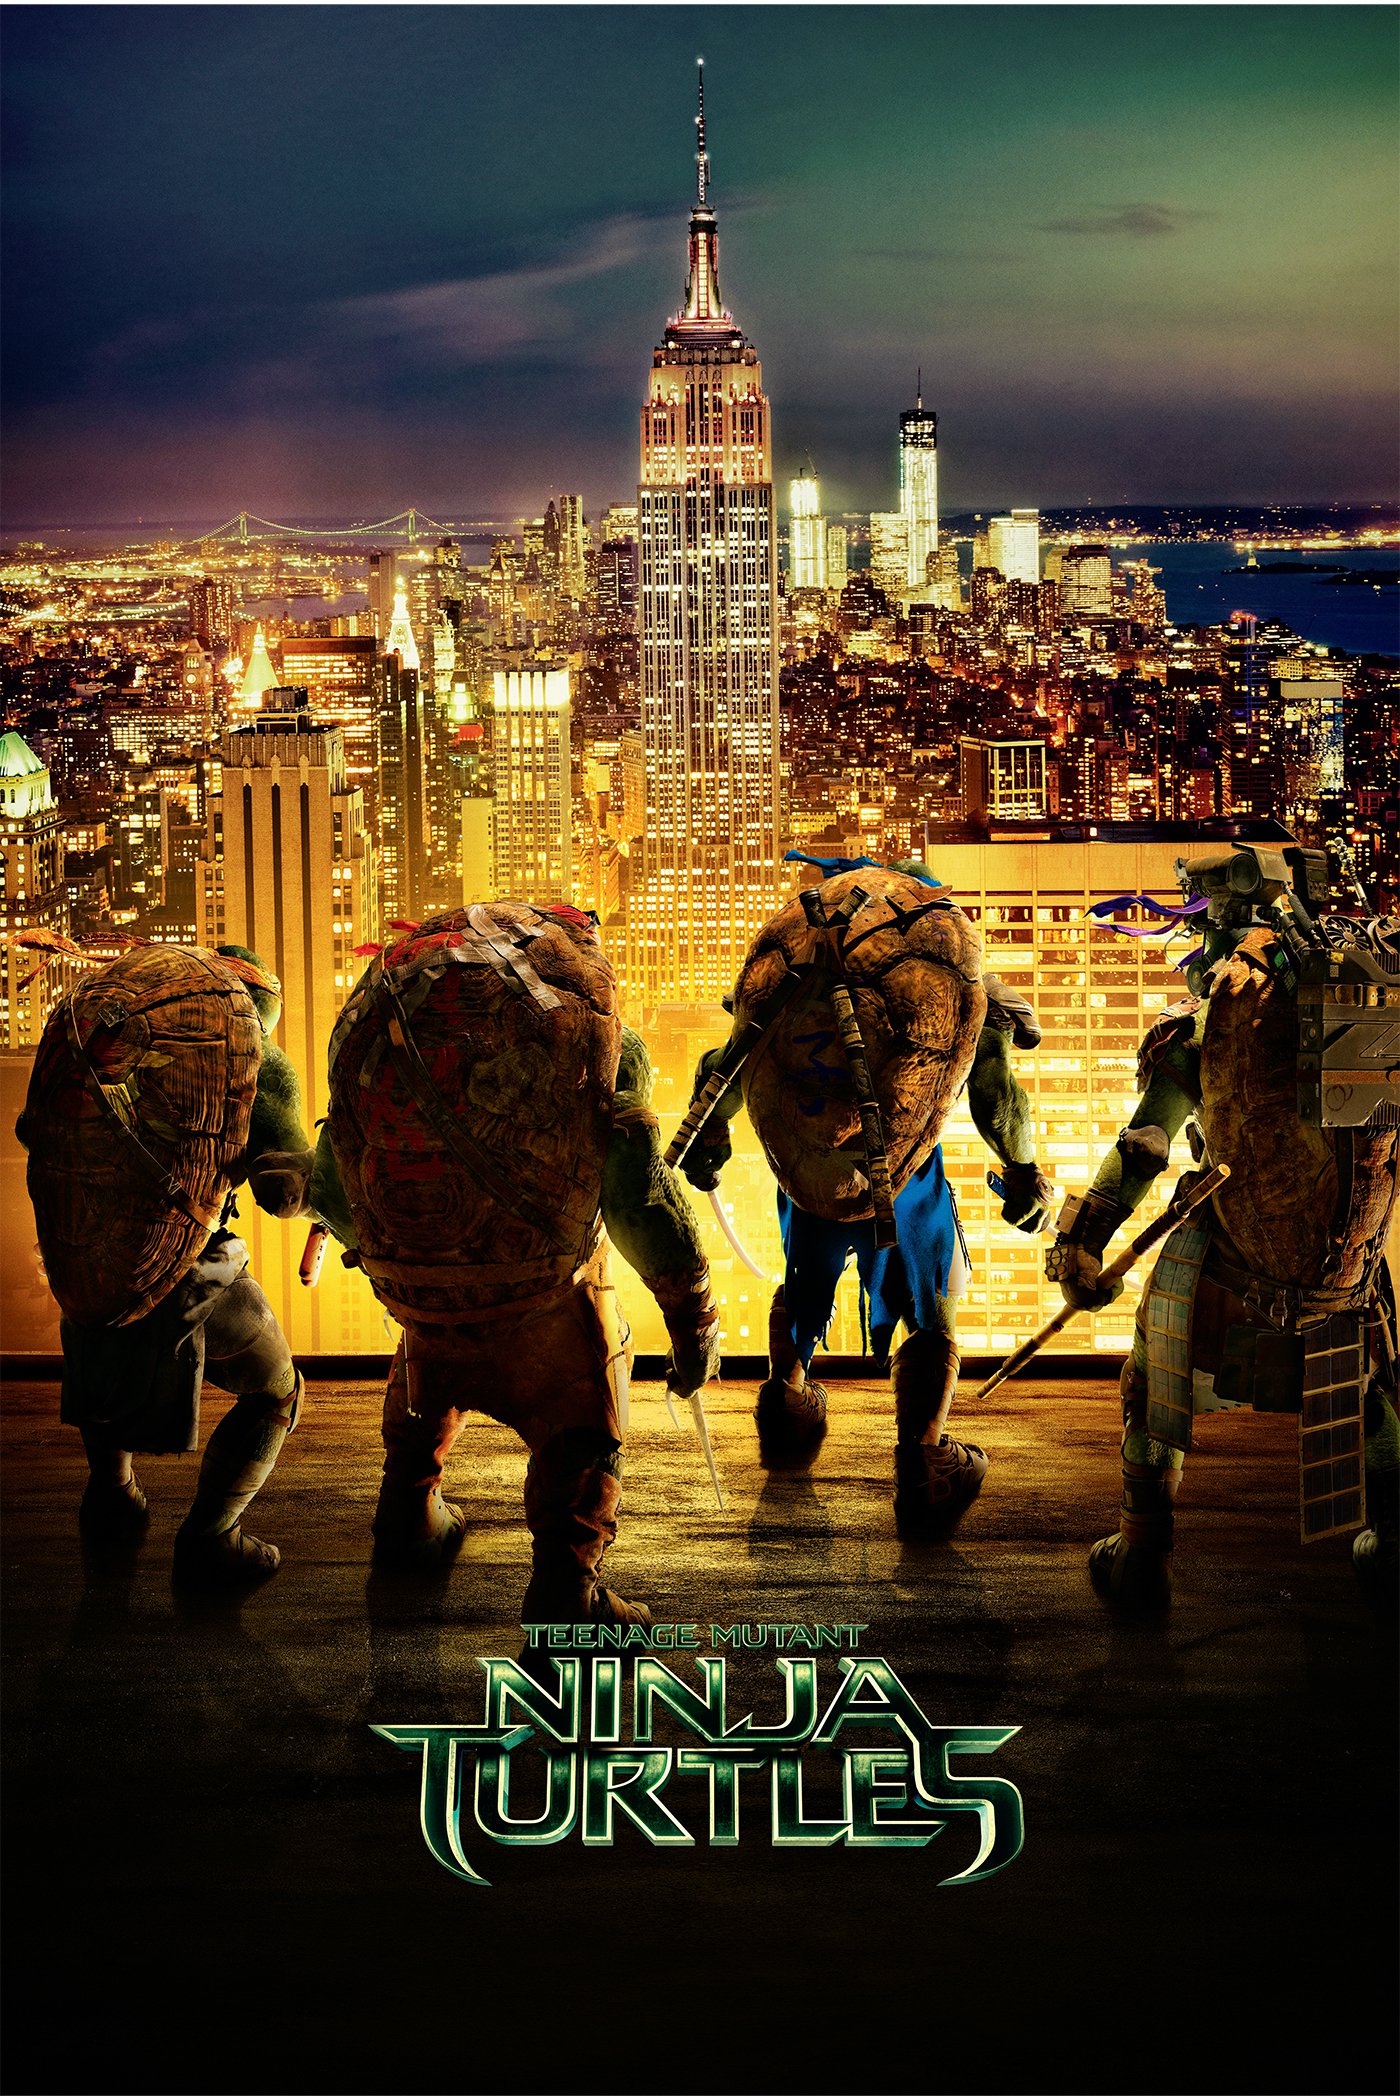 Plakat von "Teenage Mutant Ninja Turtles"